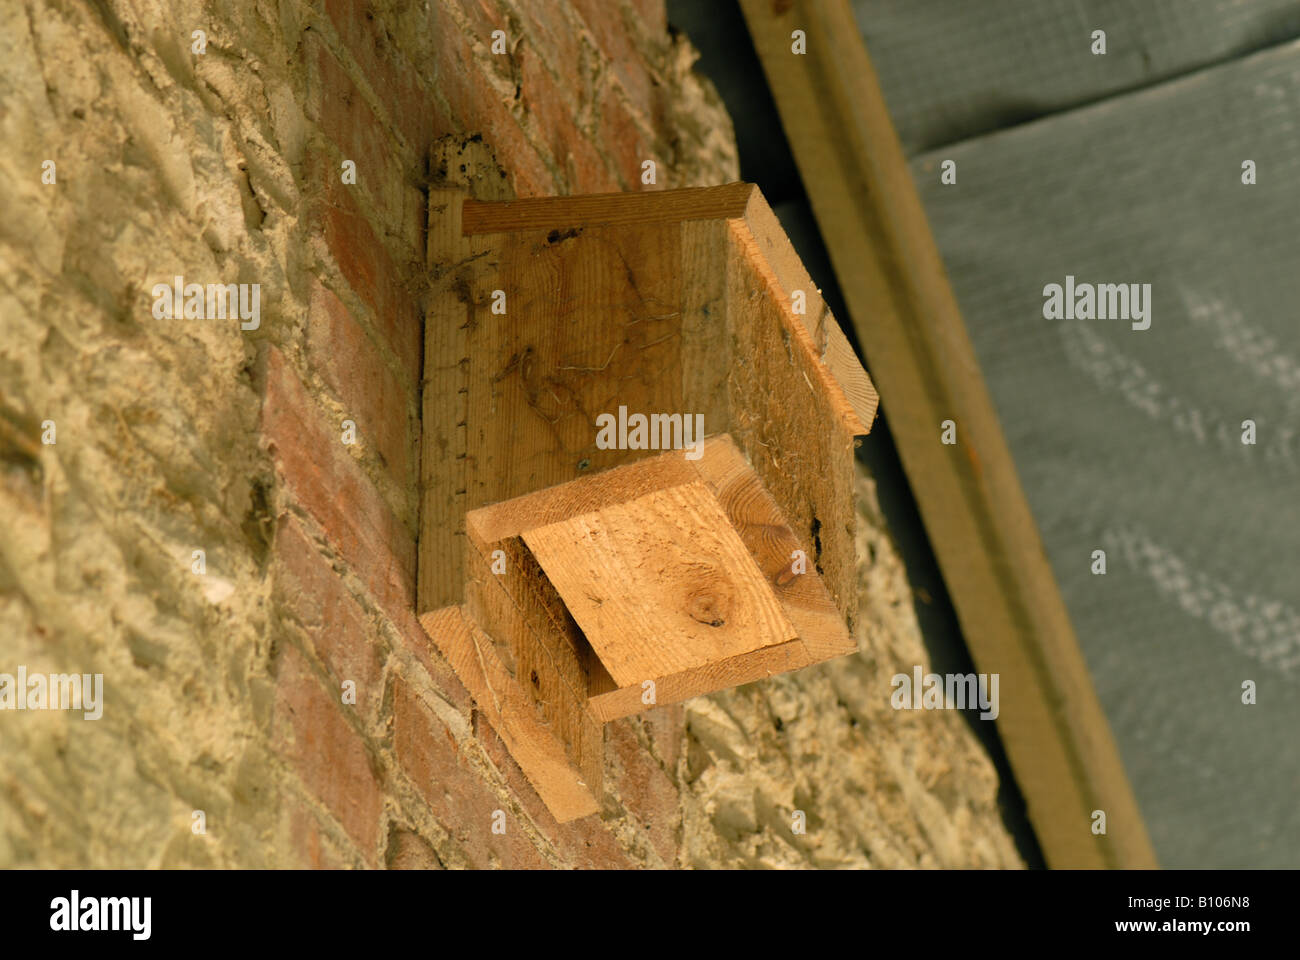 Bat box per pipistrelli sono ' appollaiati sulla parete interna di un fienile in pietra Foto Stock